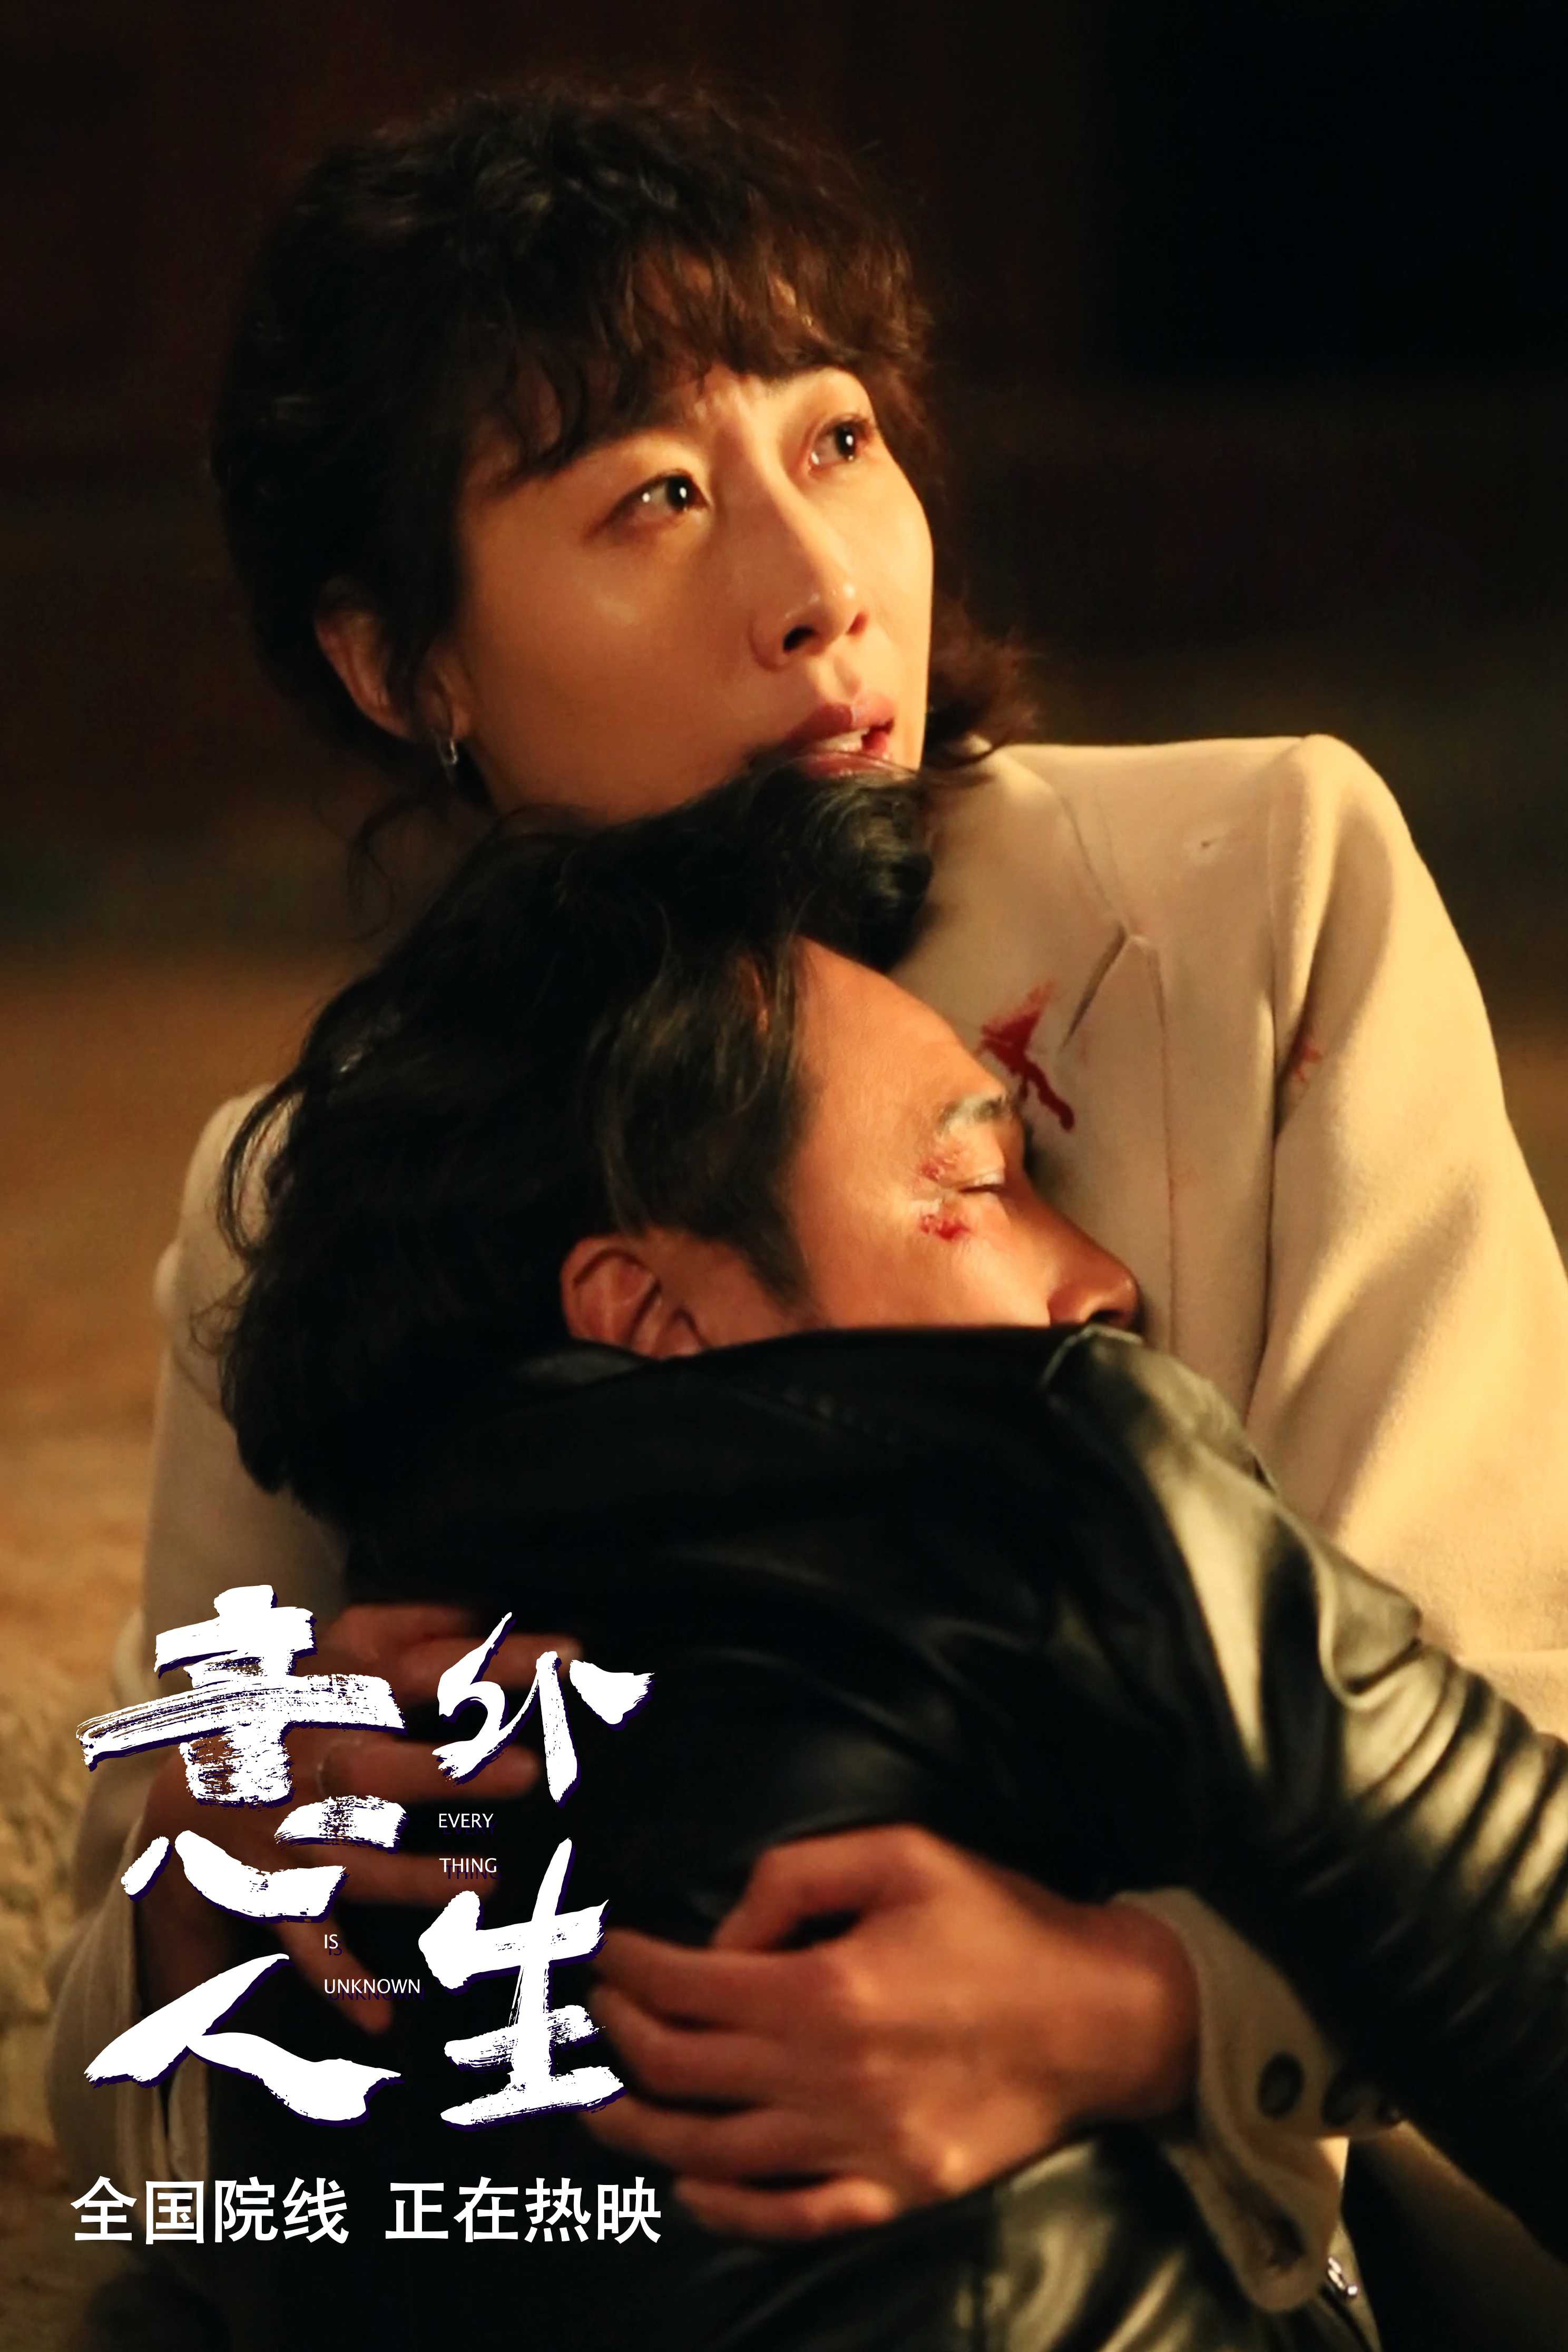 《意外人生》新剧照揭示吴镇宇与任素汐之间情感的爱恨纠葛